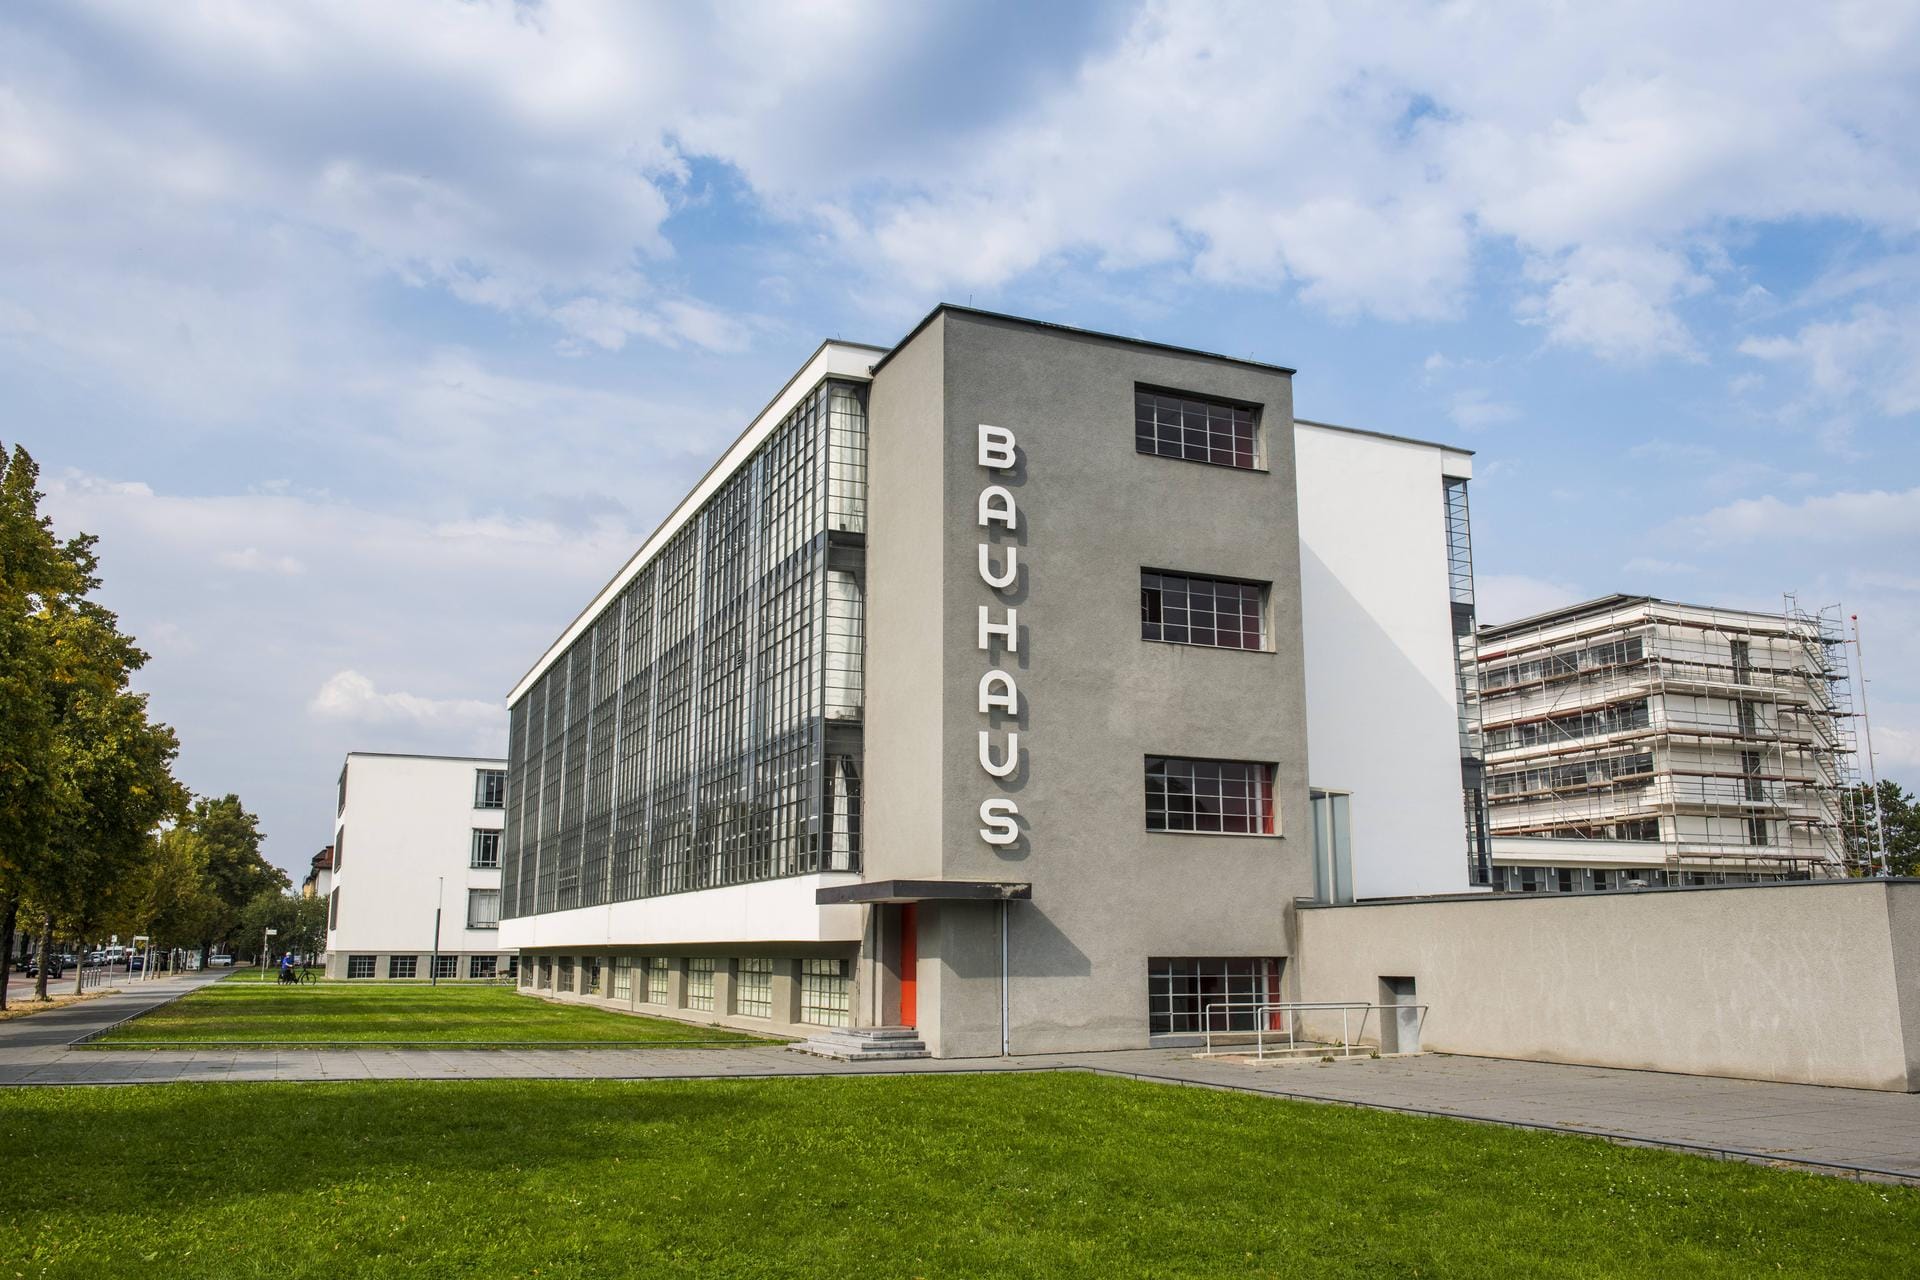 Bauhausgebäude Dessau: 2019 feiert die Architektur- und Designschule Bauhaus ihren 100. Geburtstag.